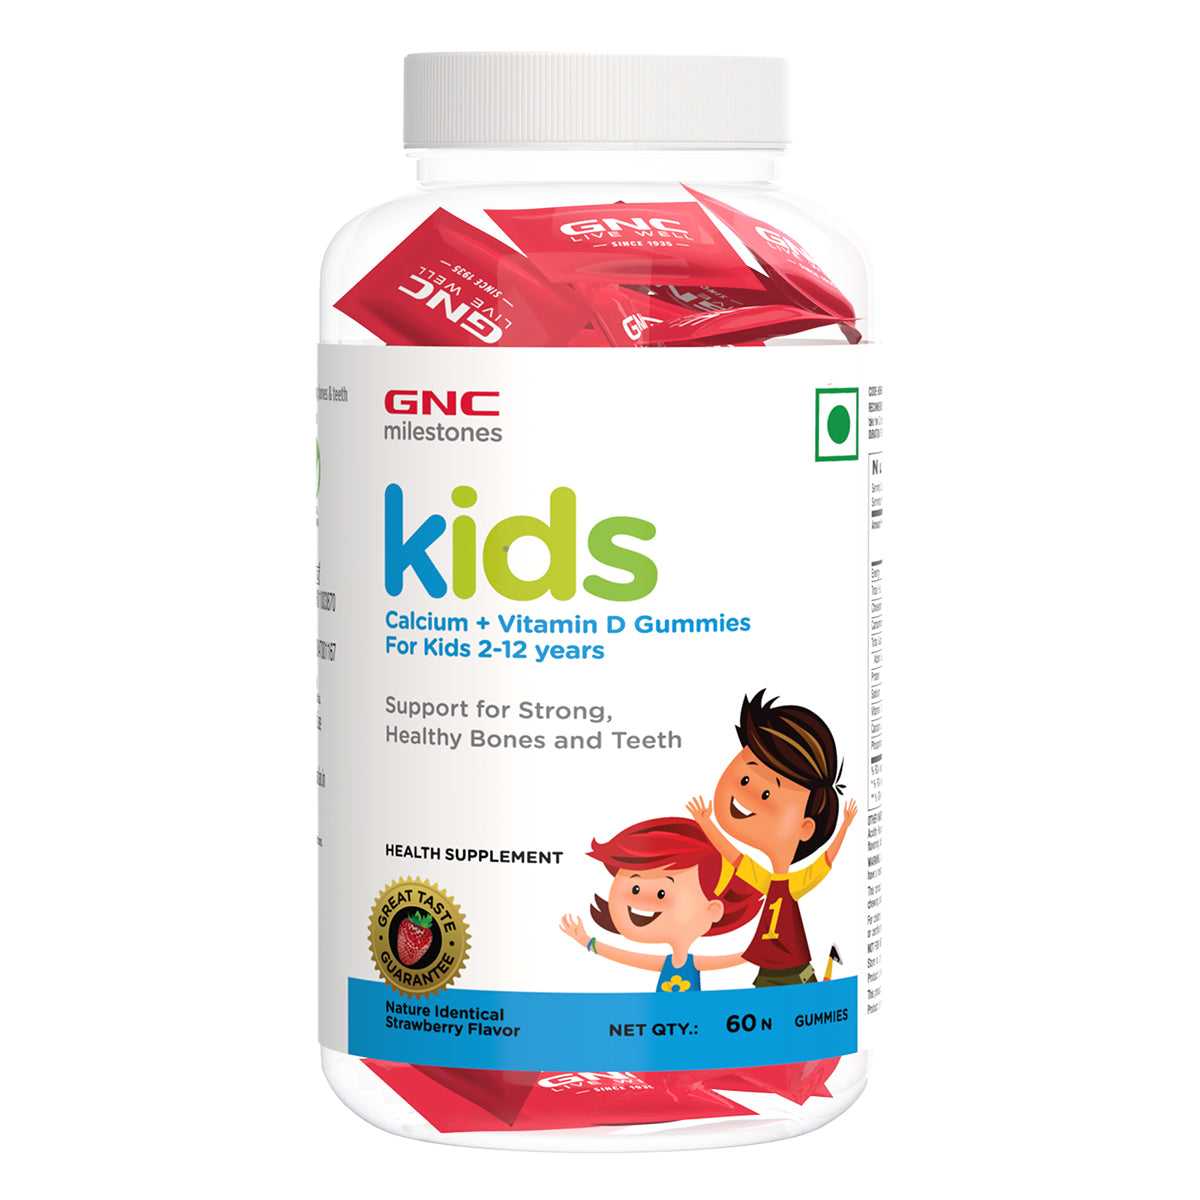 GNC milestones kids Calcium + Vitamin D Gummies